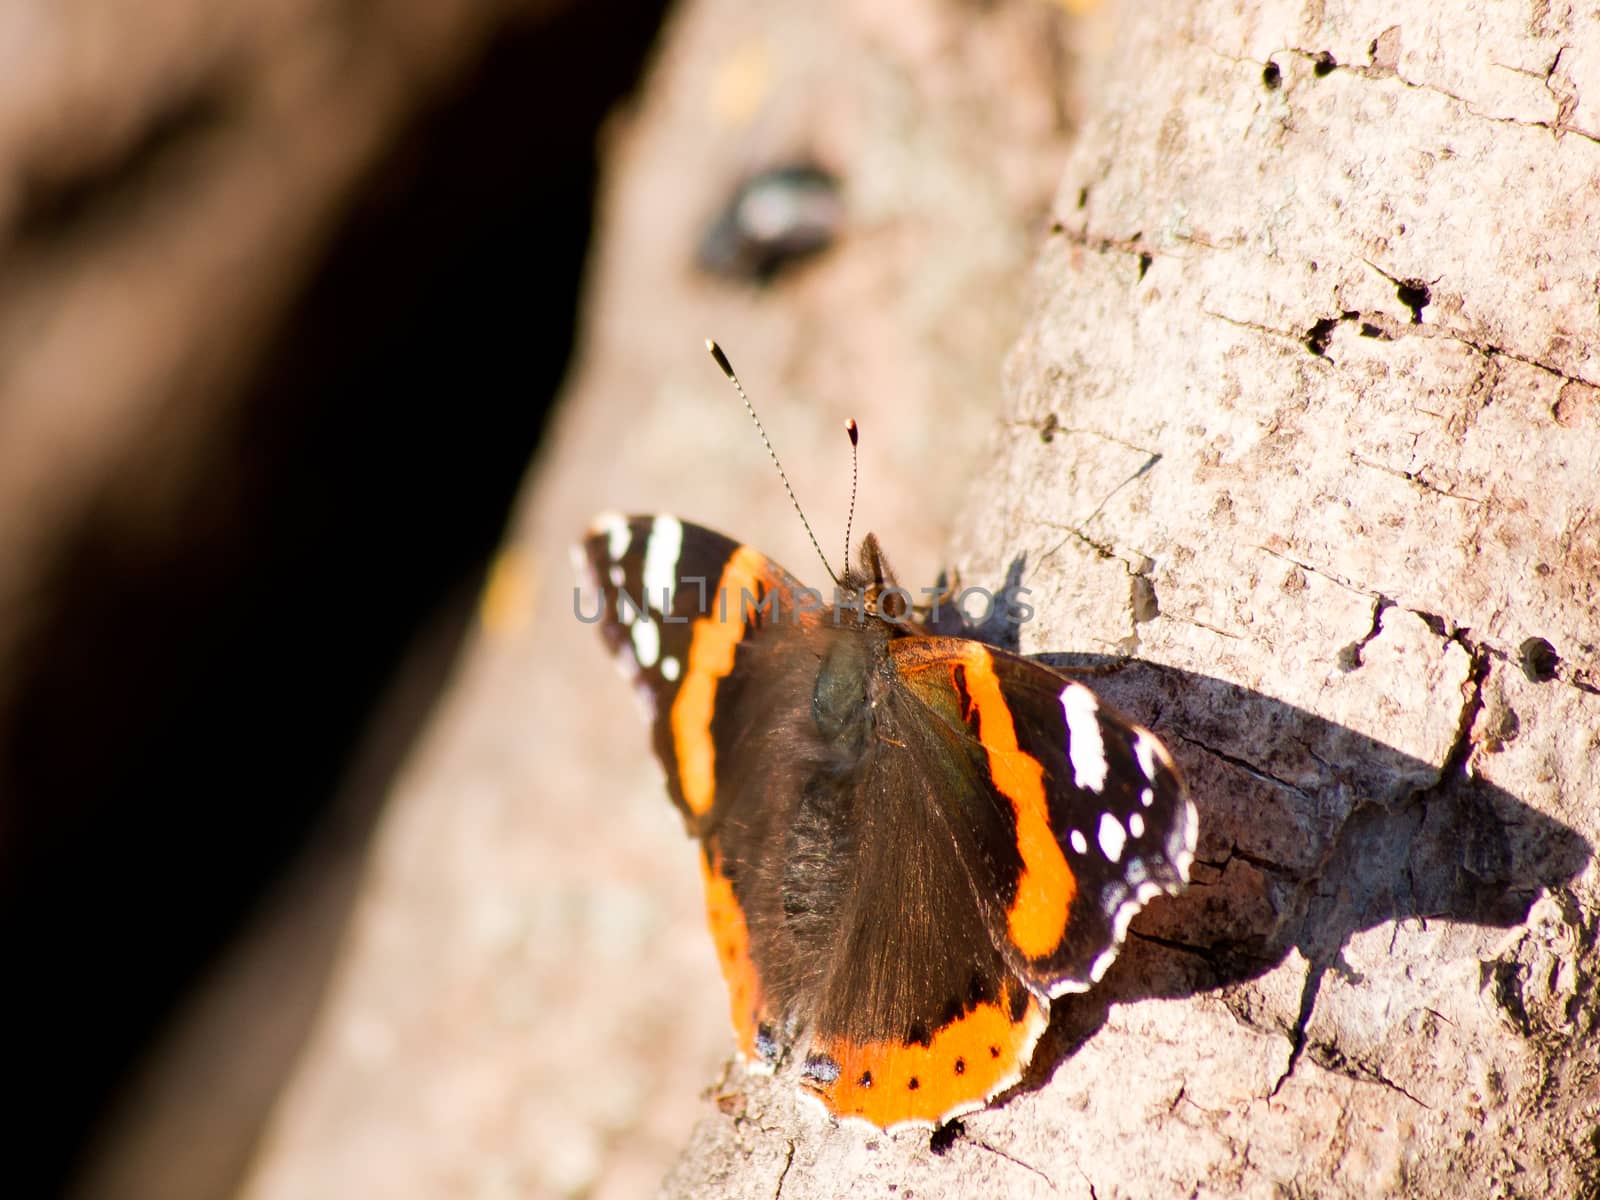 Admiral butterfly (Vanessa Atalanta) in the autumn garden.